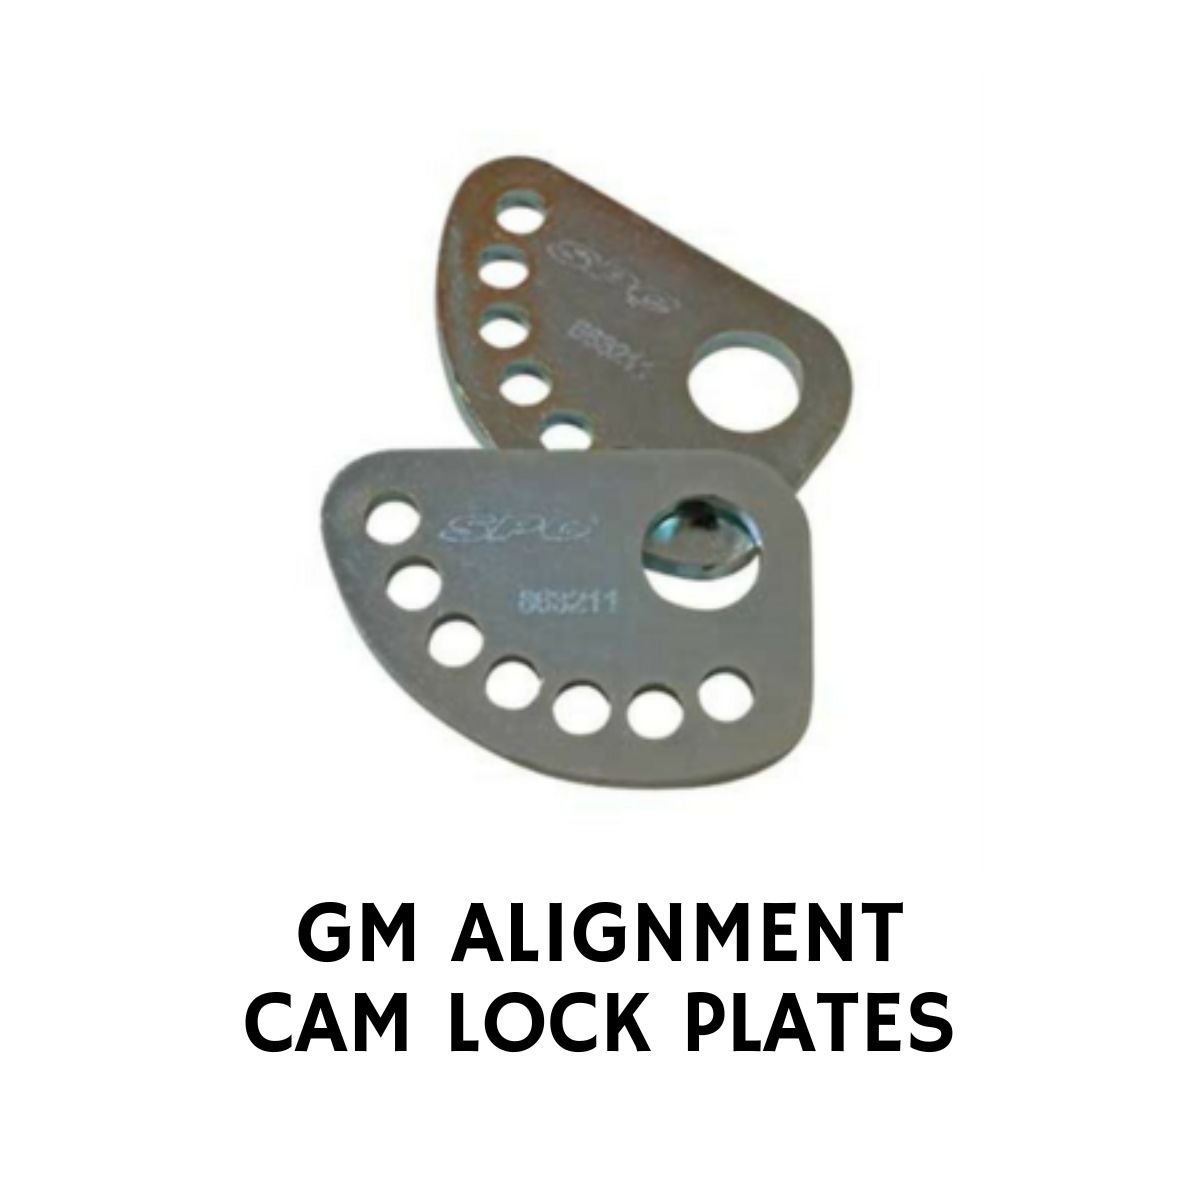 GM ALIGNMENT CAM LOCK PLATES